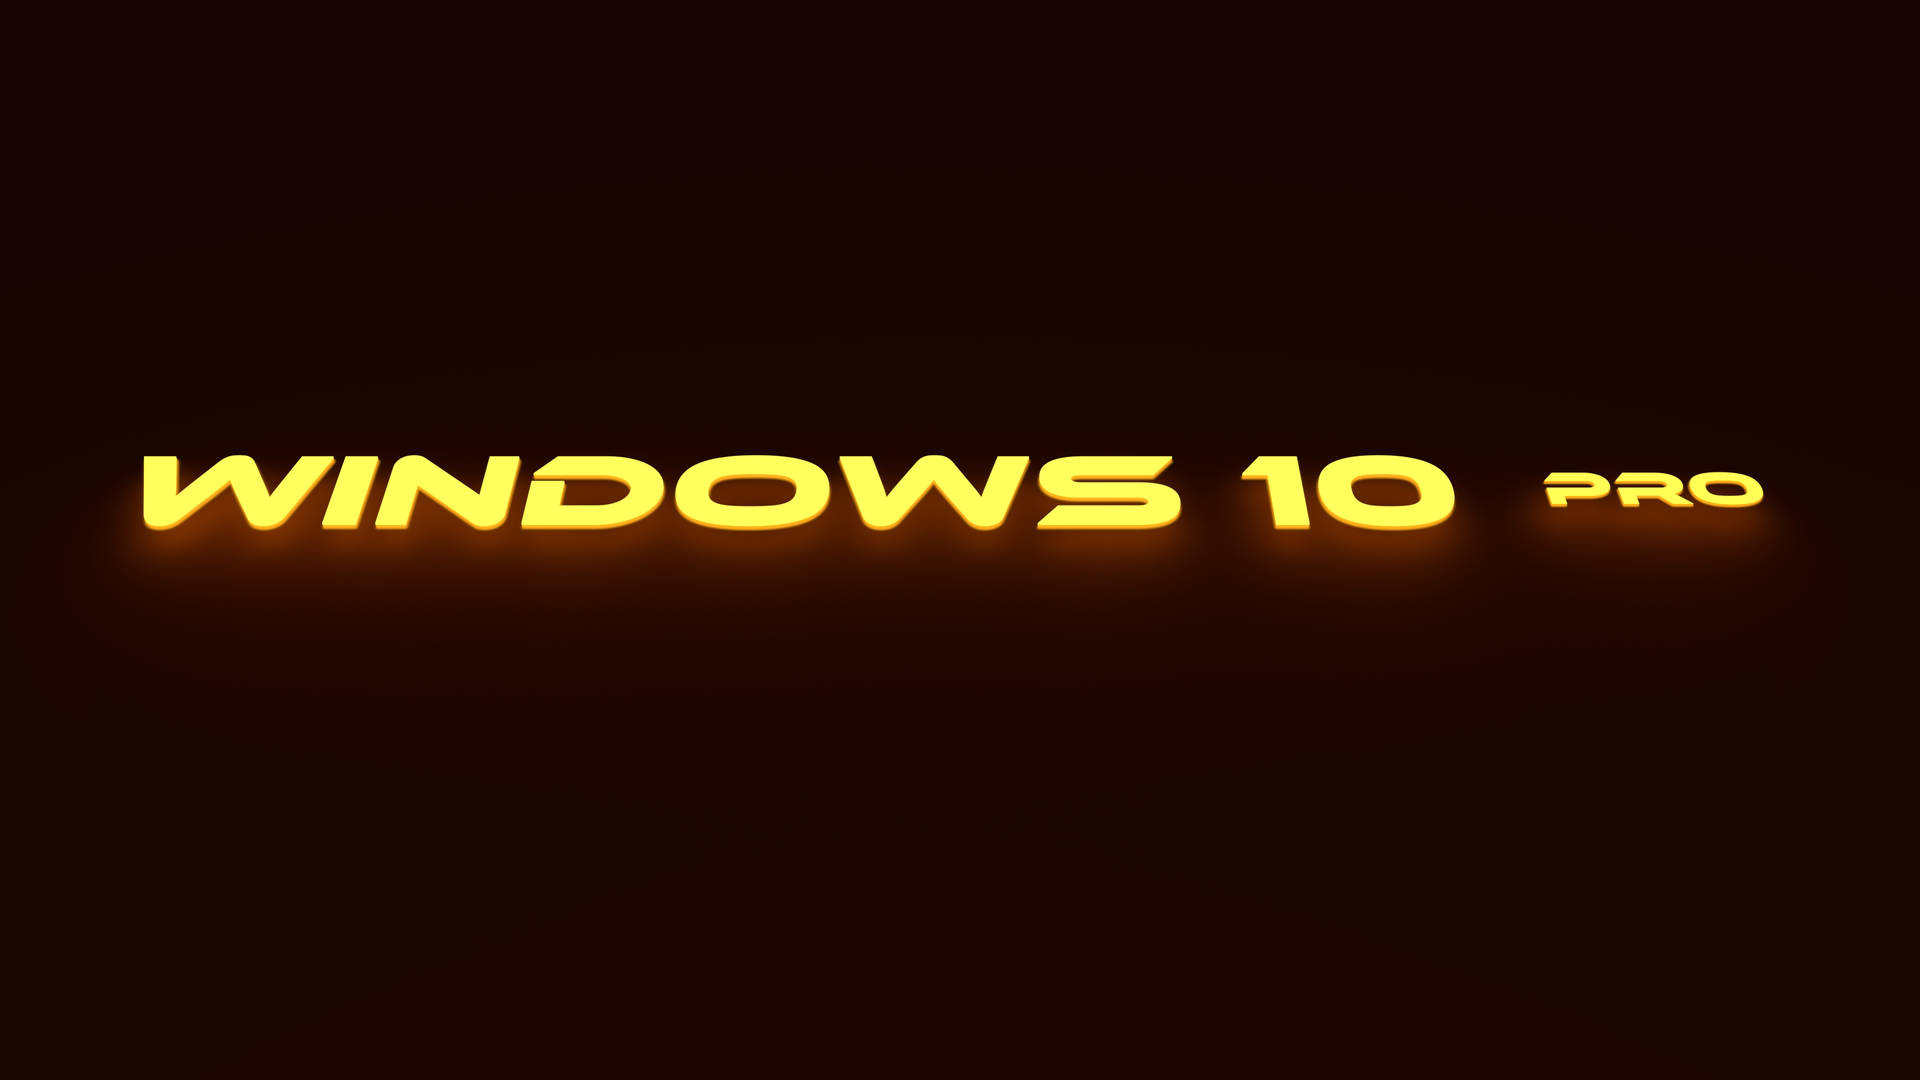 Windows 10 Hd Pro